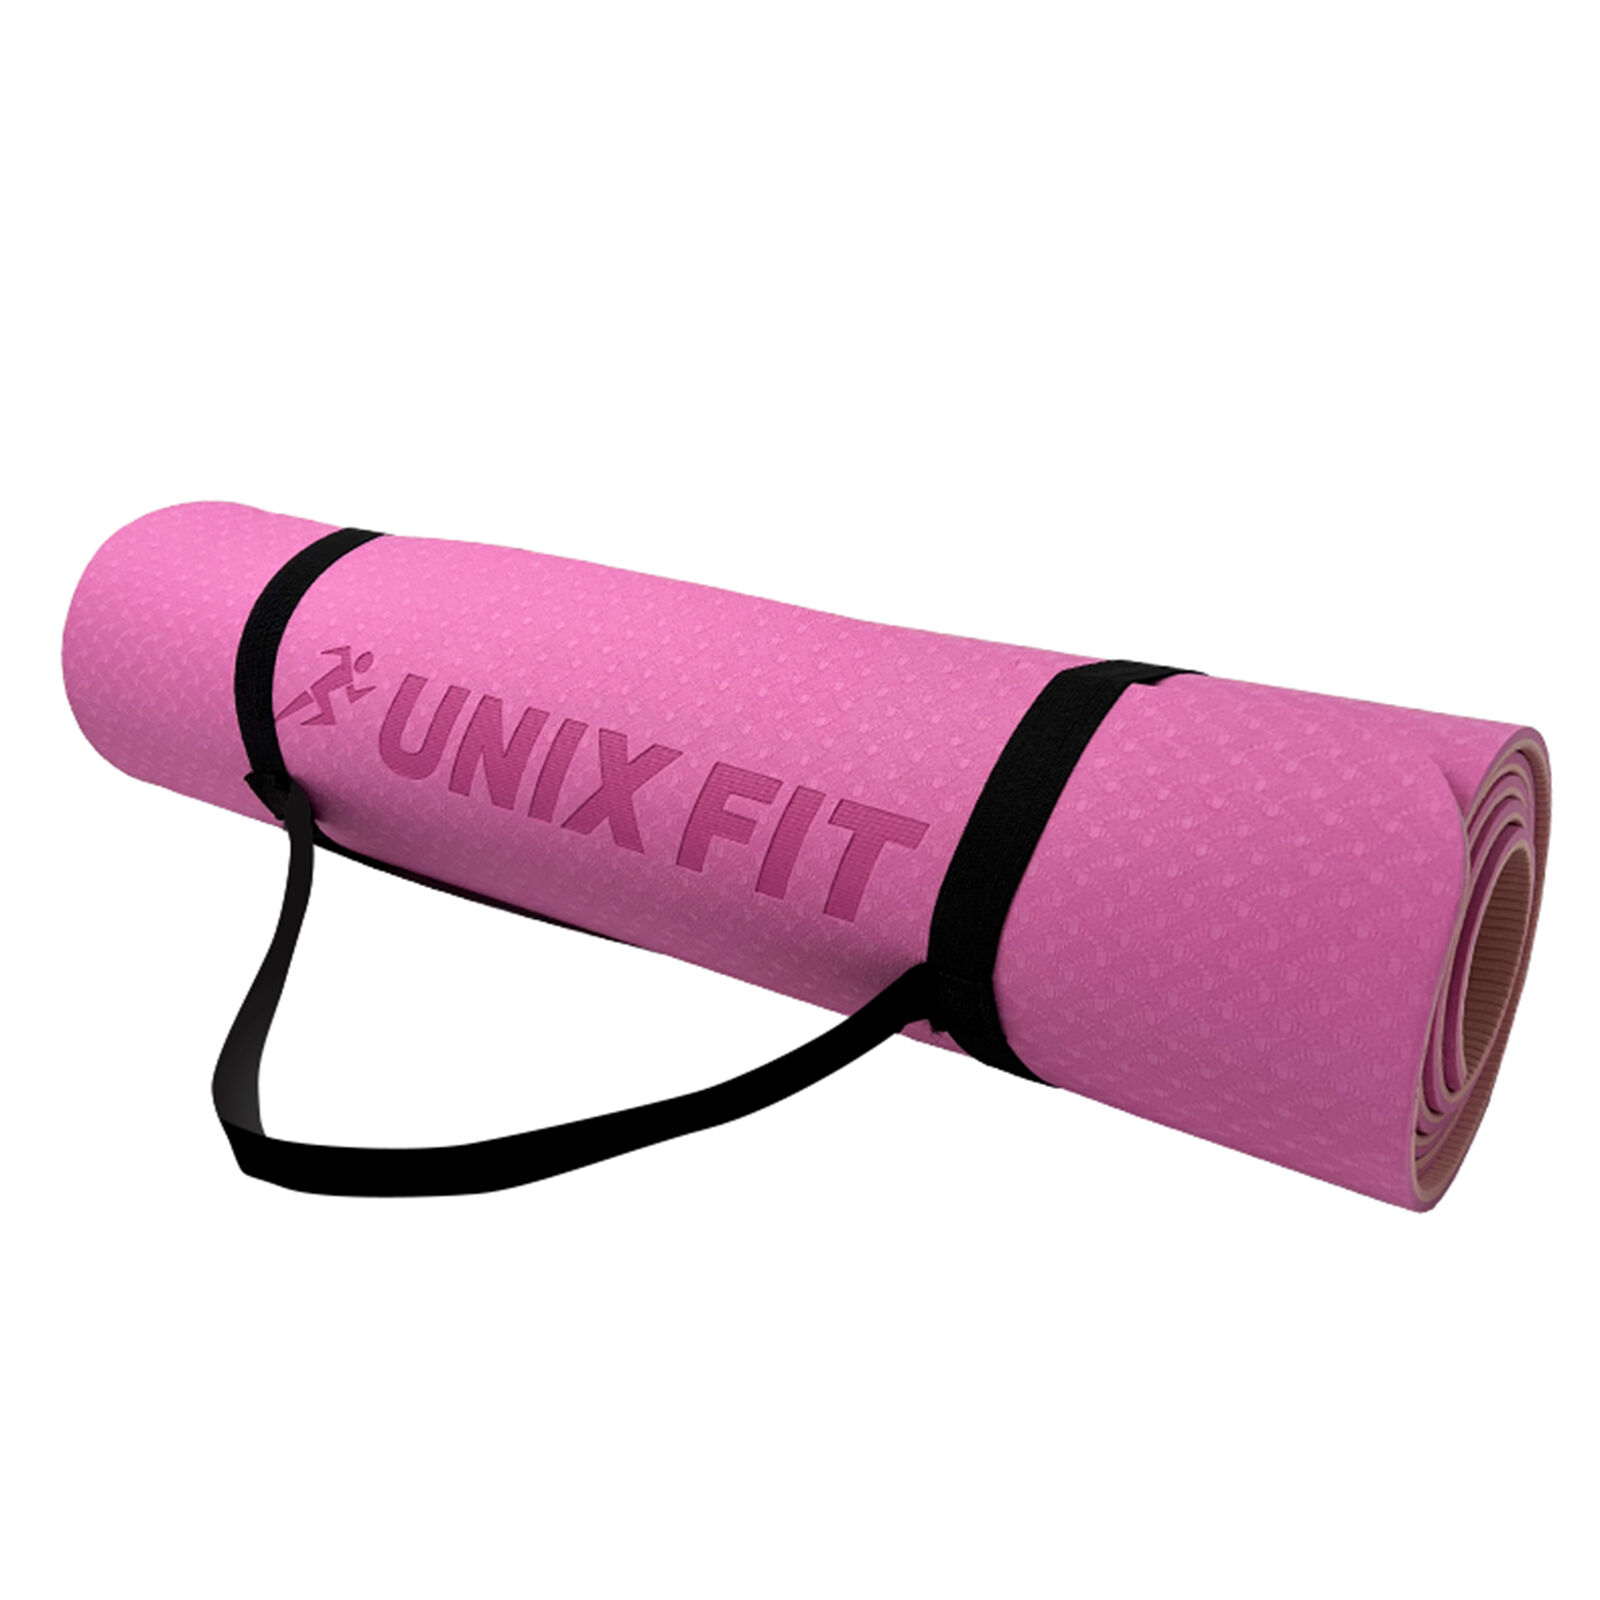 Коврик для йоги и фитнеса UNIX Fit двусторонний, 180 х 61 х 0,6 см, двуцветный, розовый UNIX Fit™ Коврики для йоги и фит